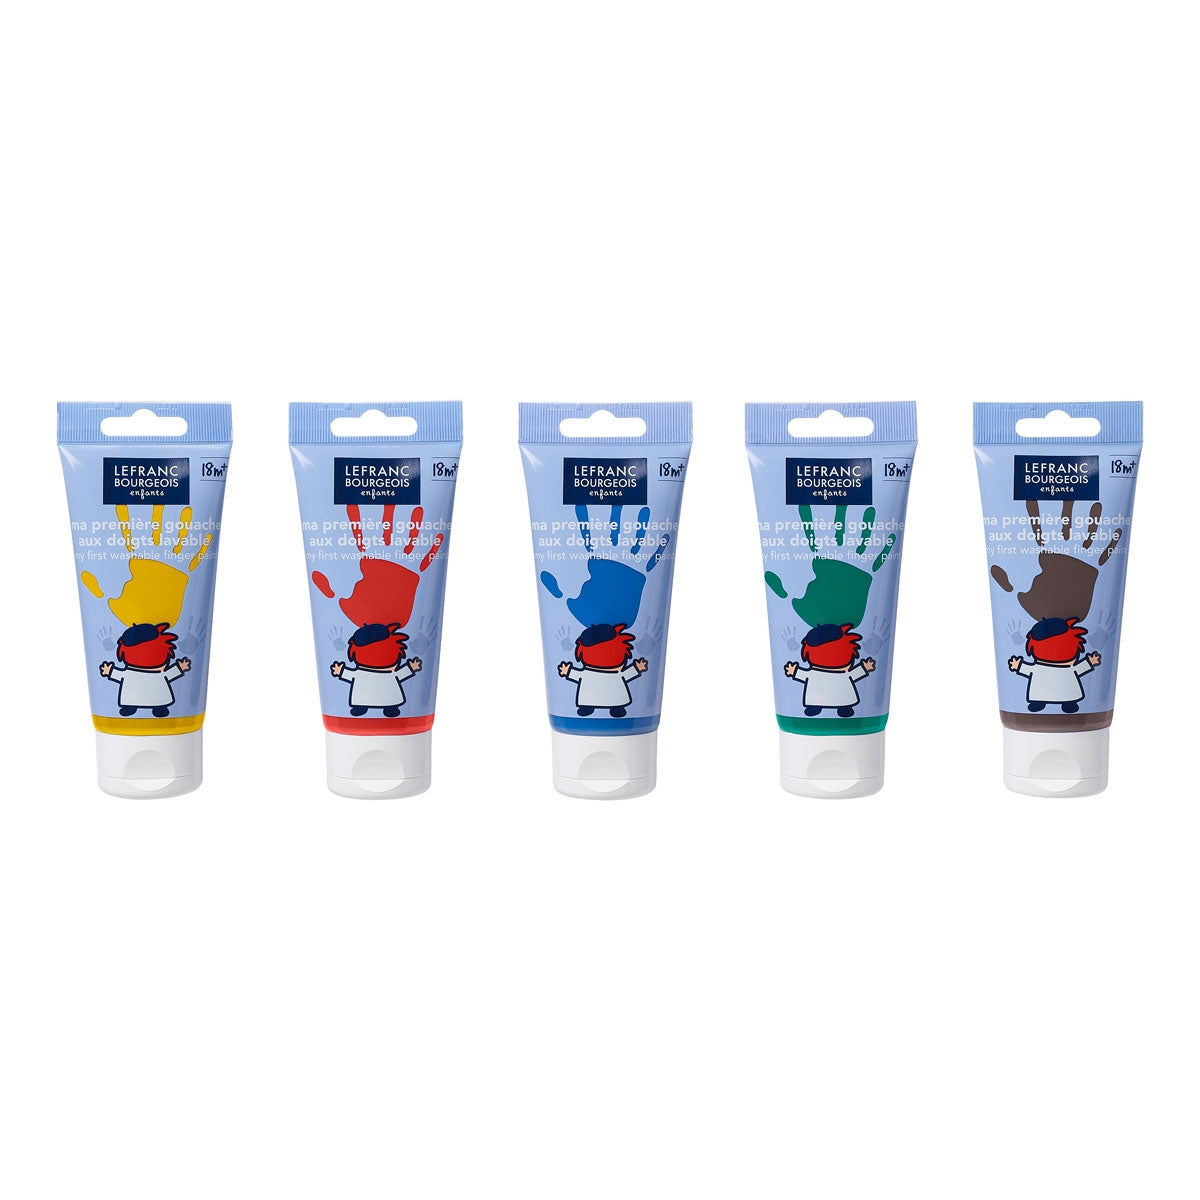 Farbe & CO - 5 x 80 ml - Waschmaschinenfinger -Farben für Kleinkinder